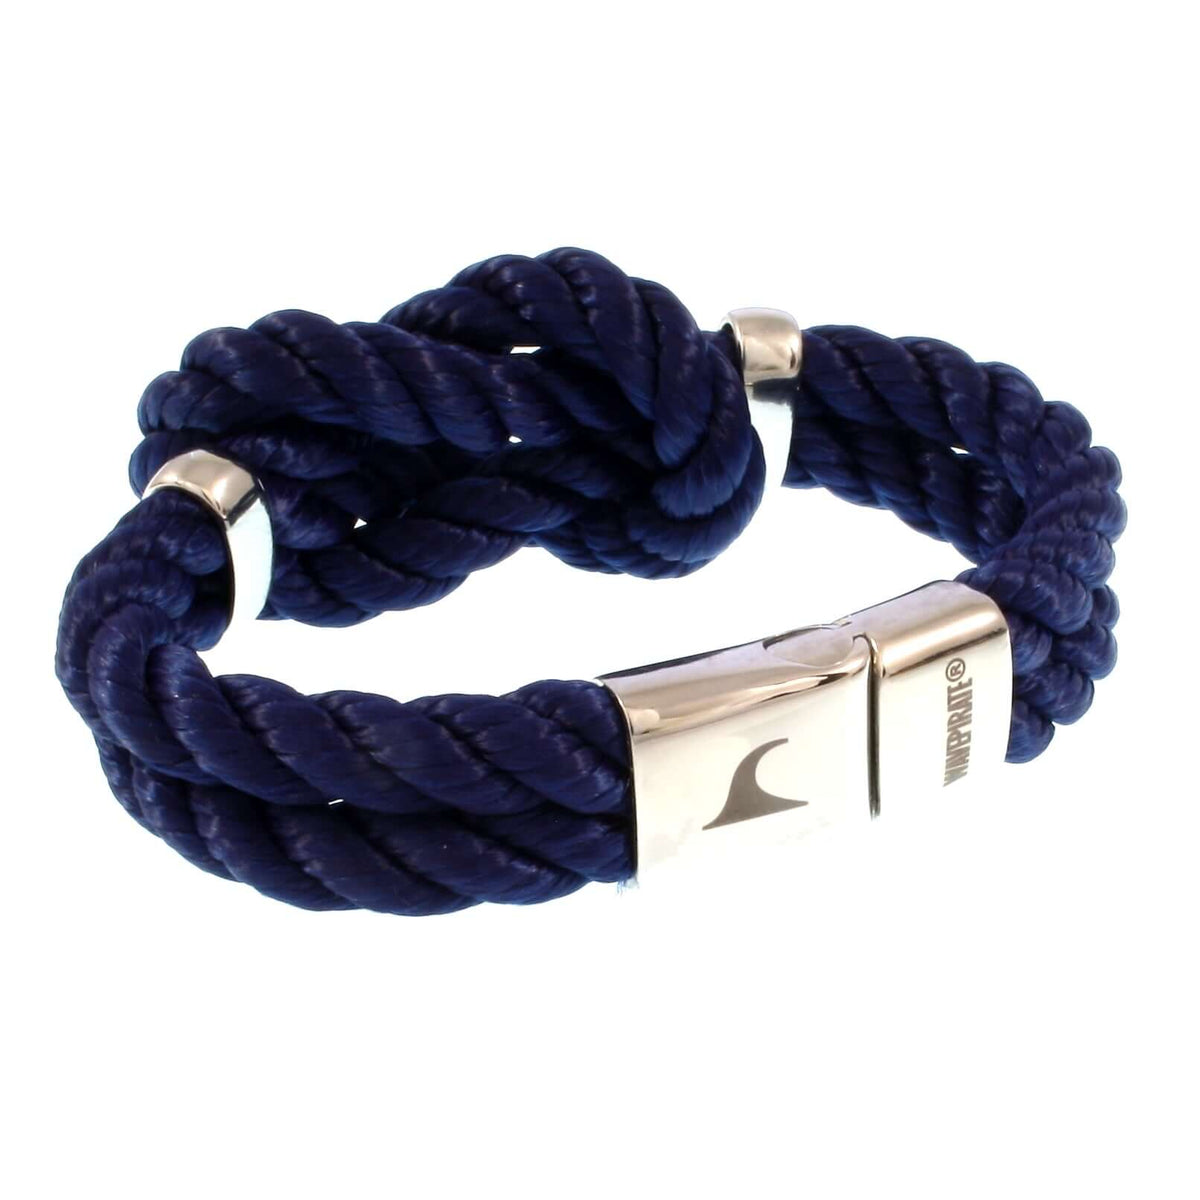 Damen-Segeltau-armband-pure-blau-silber-kordel-geflochten-Edelstahlverschluss-vorn-wavepirate-shop-k